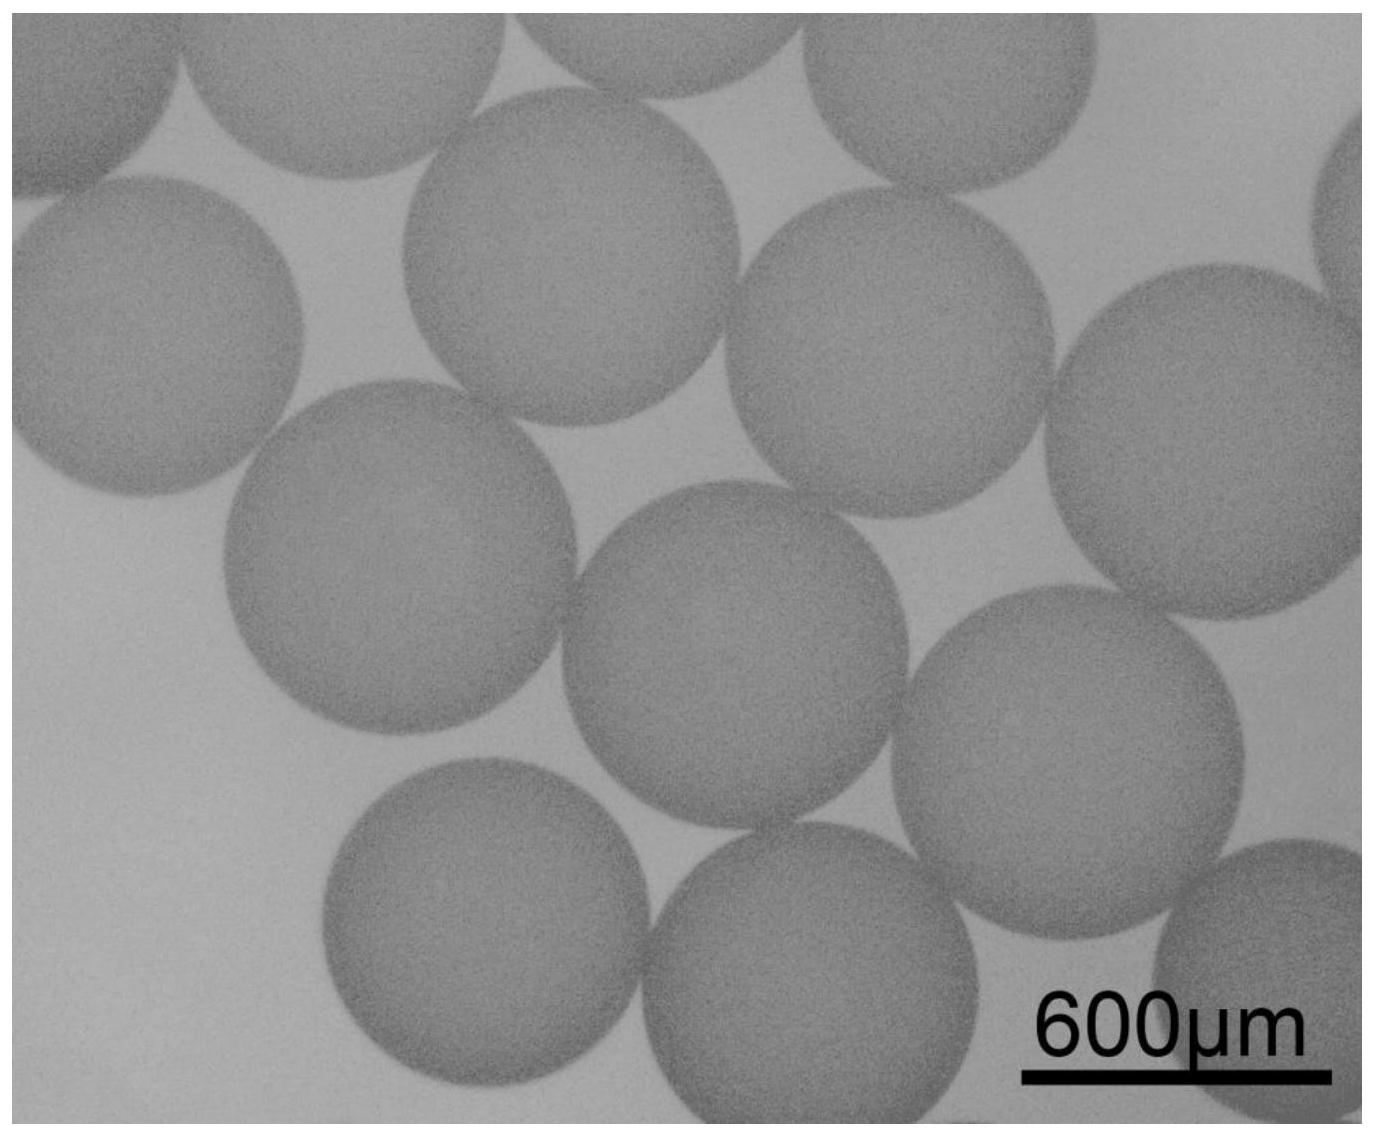 聚乙烯醇栓塞微球图片